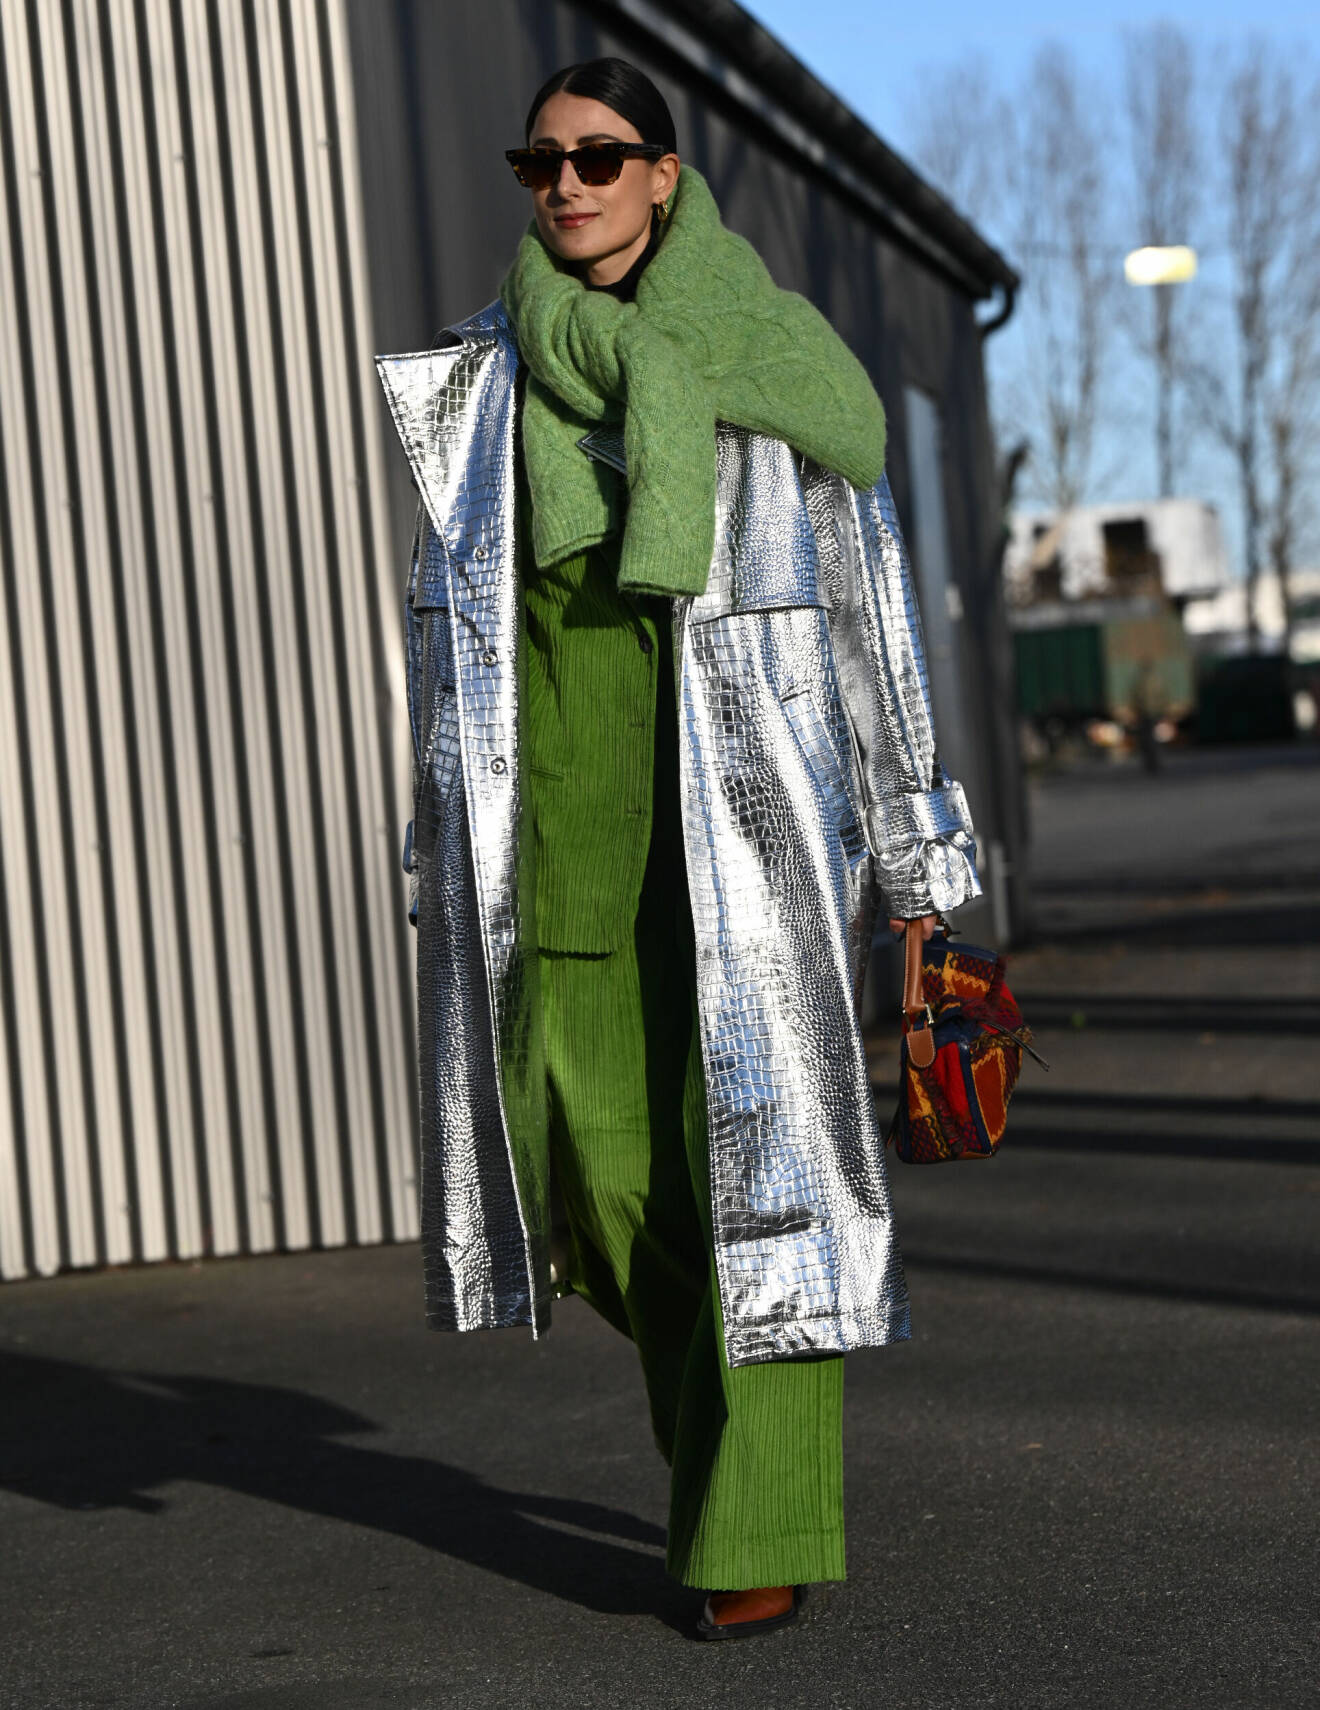 Silverfärgad kappa matchas med grön stickad tröja runt axlarna.